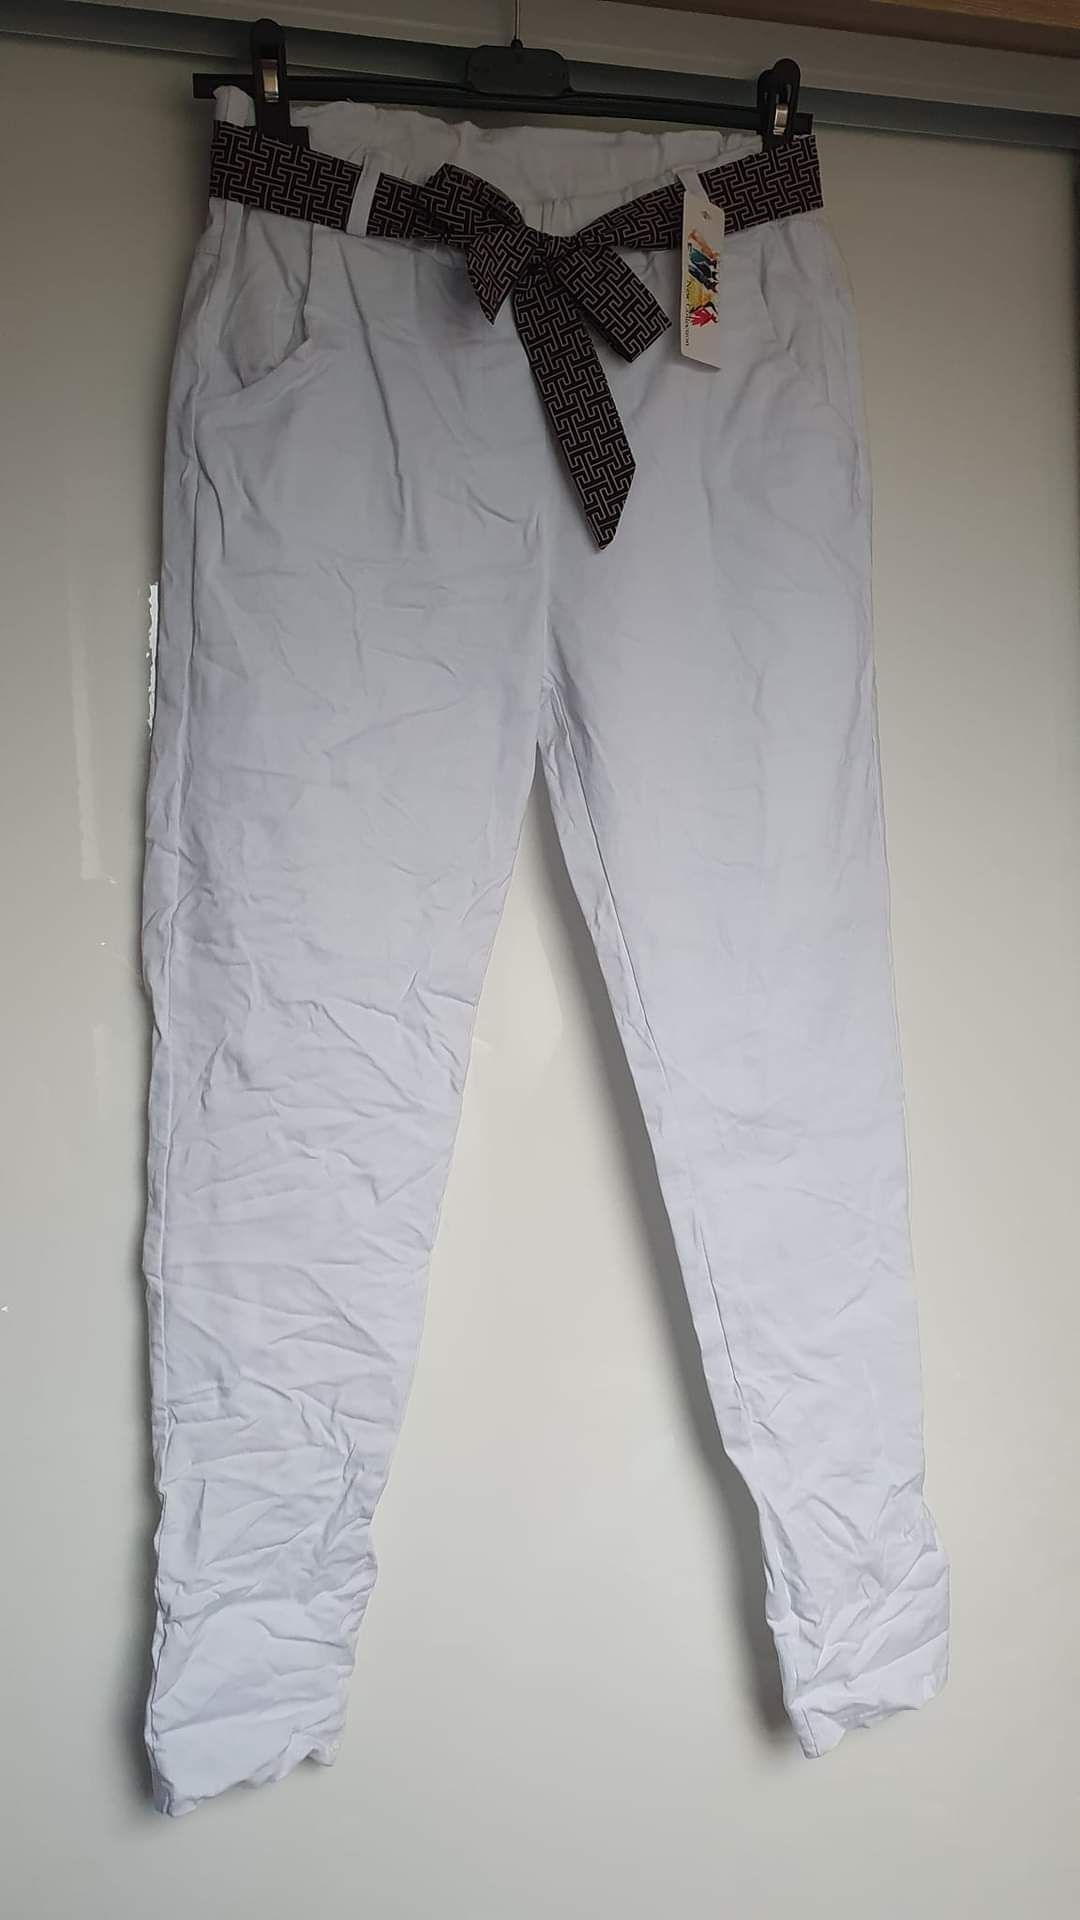 Spodnie damskie gnieciuchy białe z apaszką NOWE